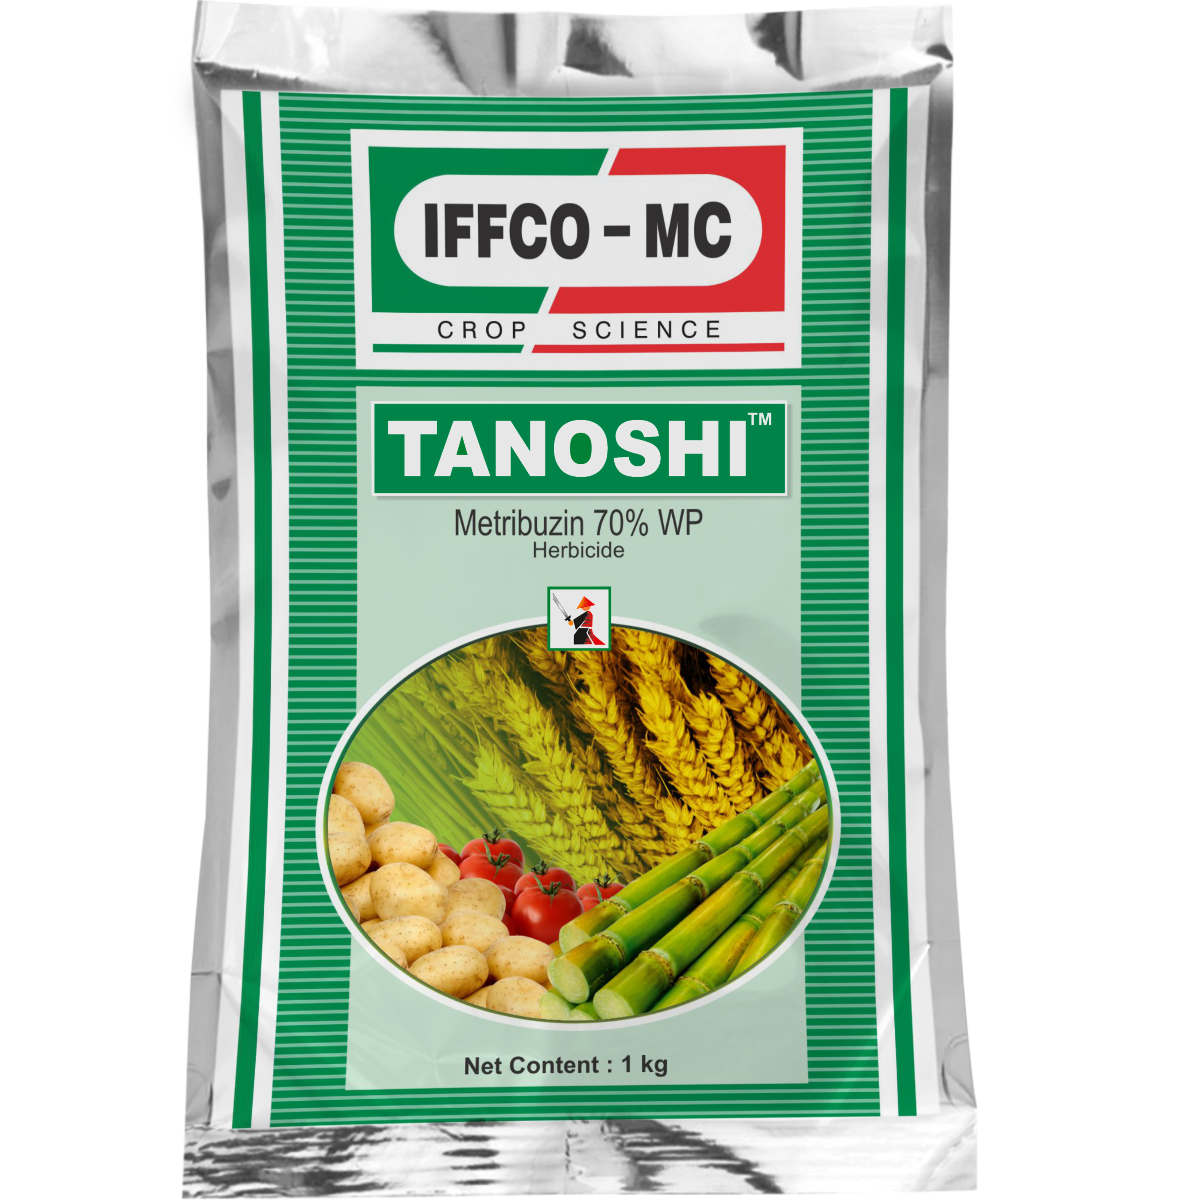 Buy Tanoshi (Metribuzin 70% WP) - 250 gm